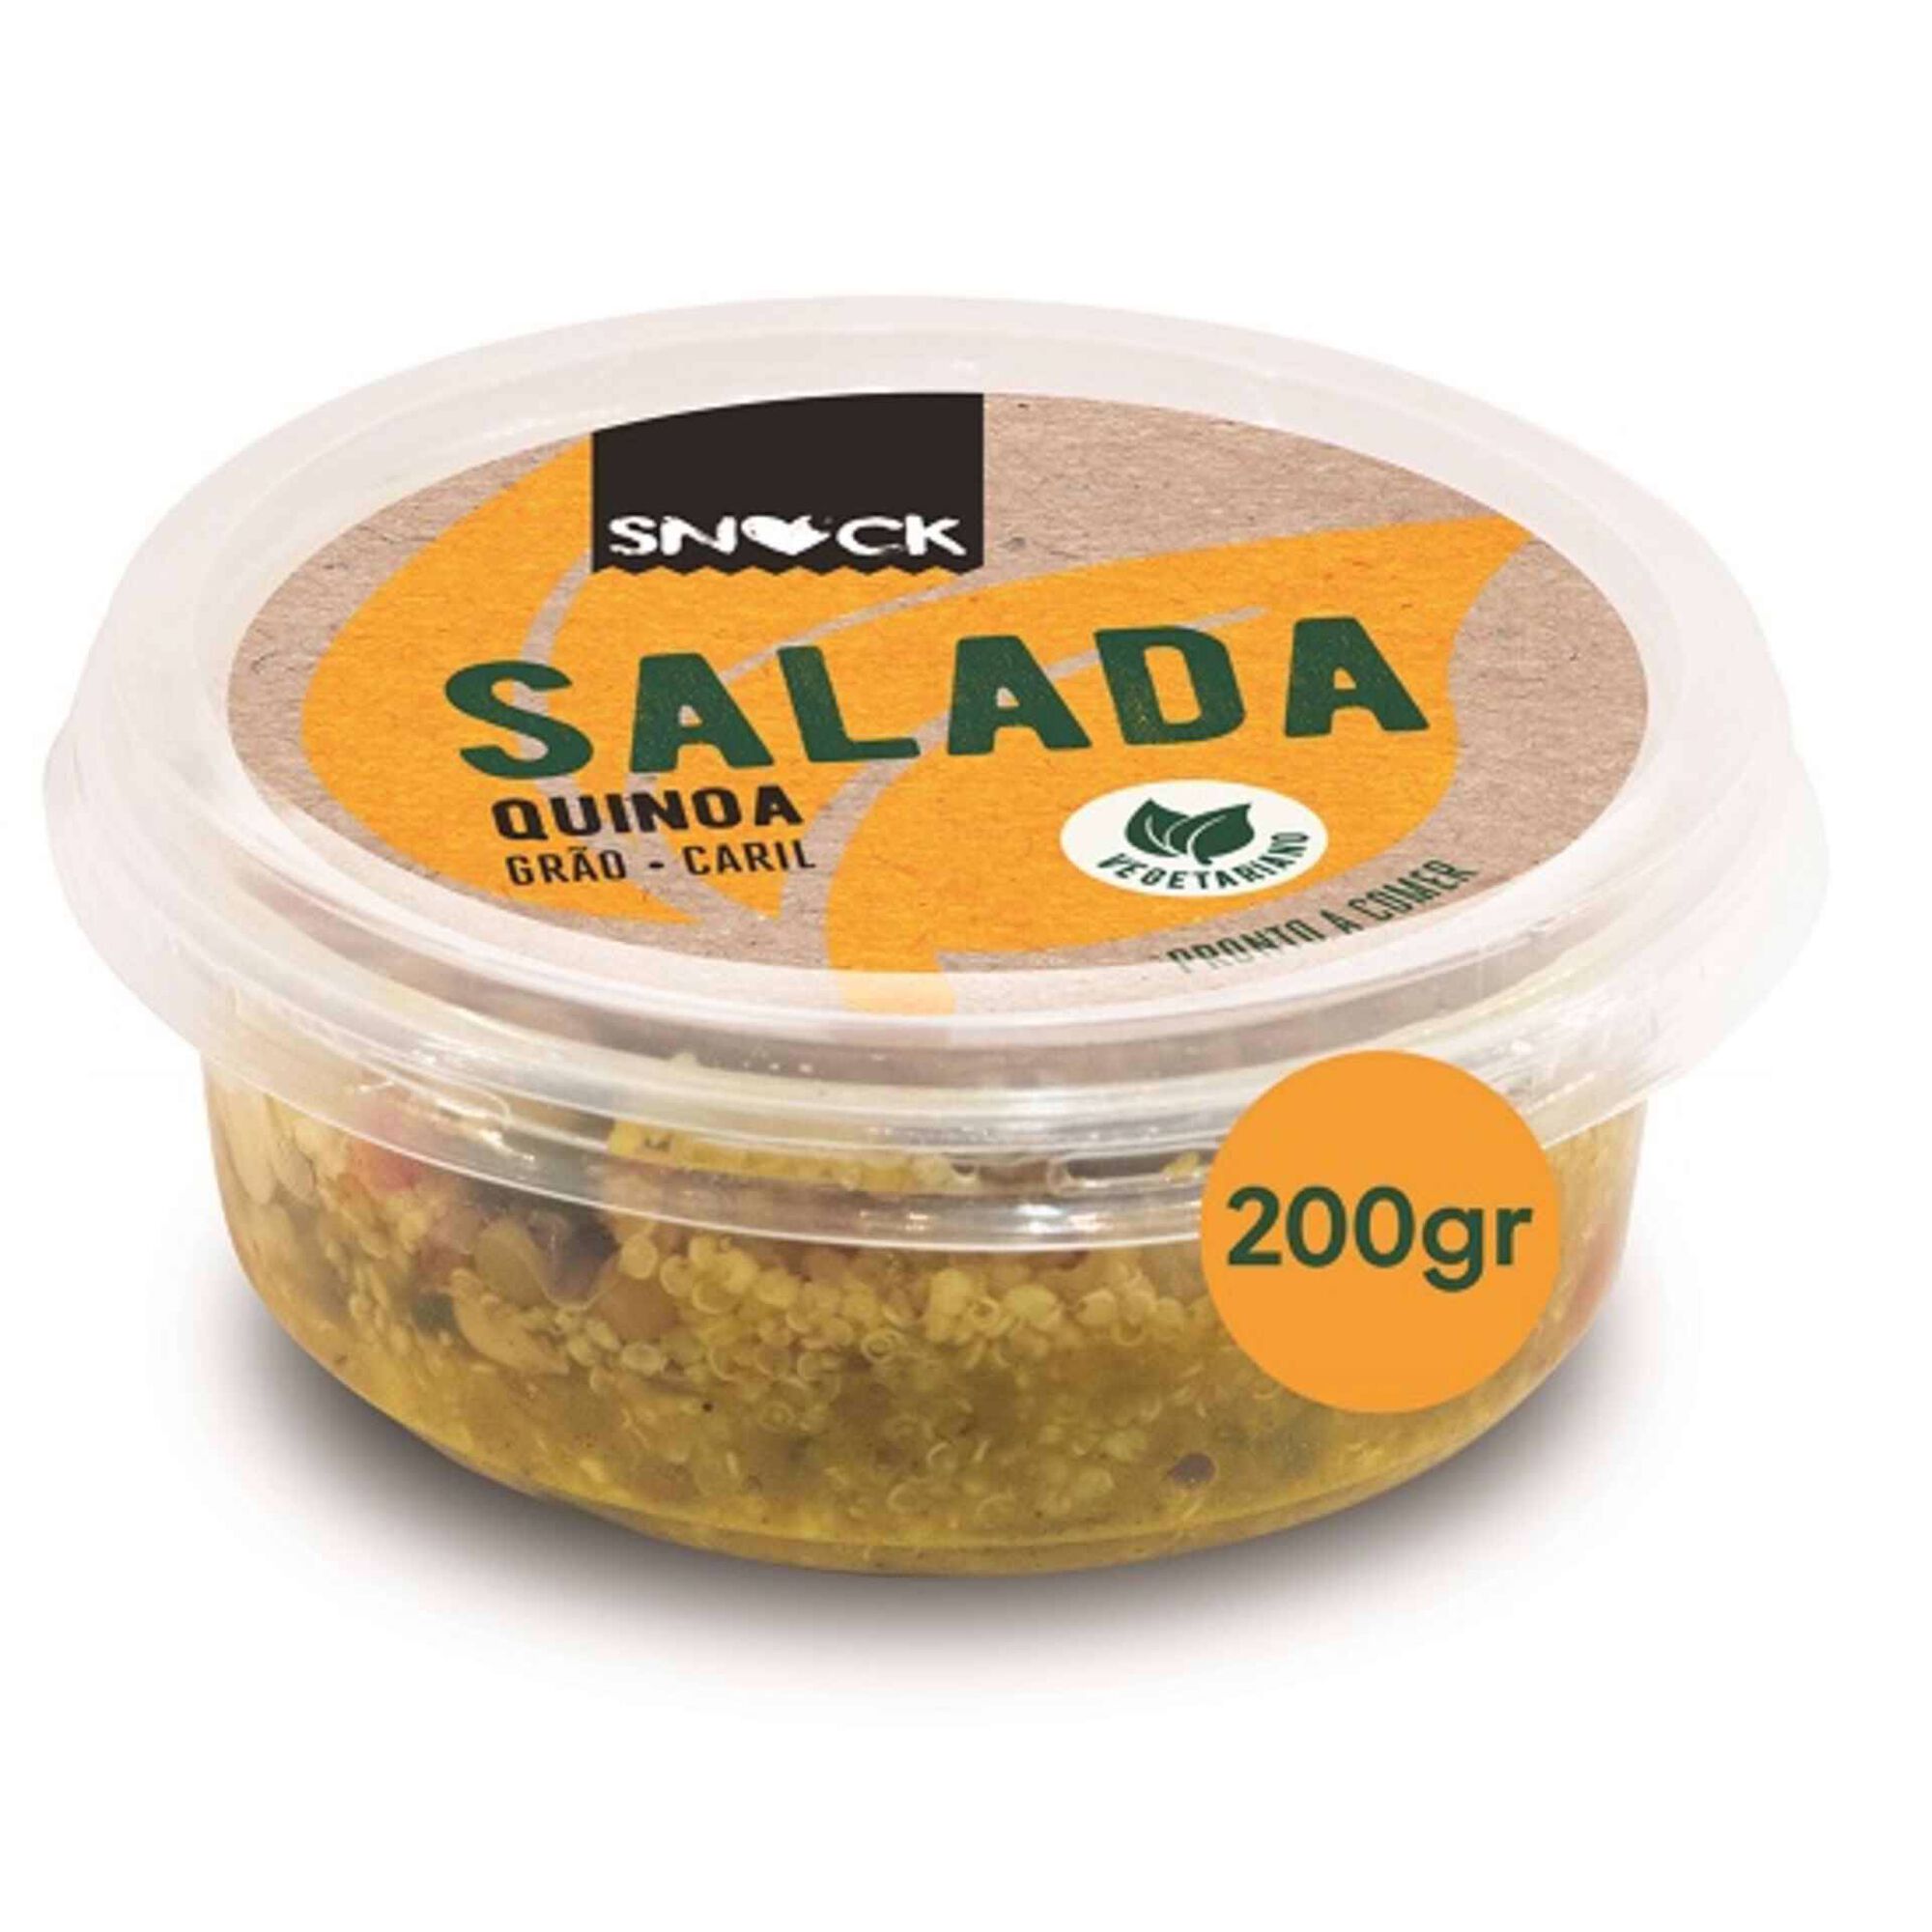 Salada Quinoa Grão E Caril